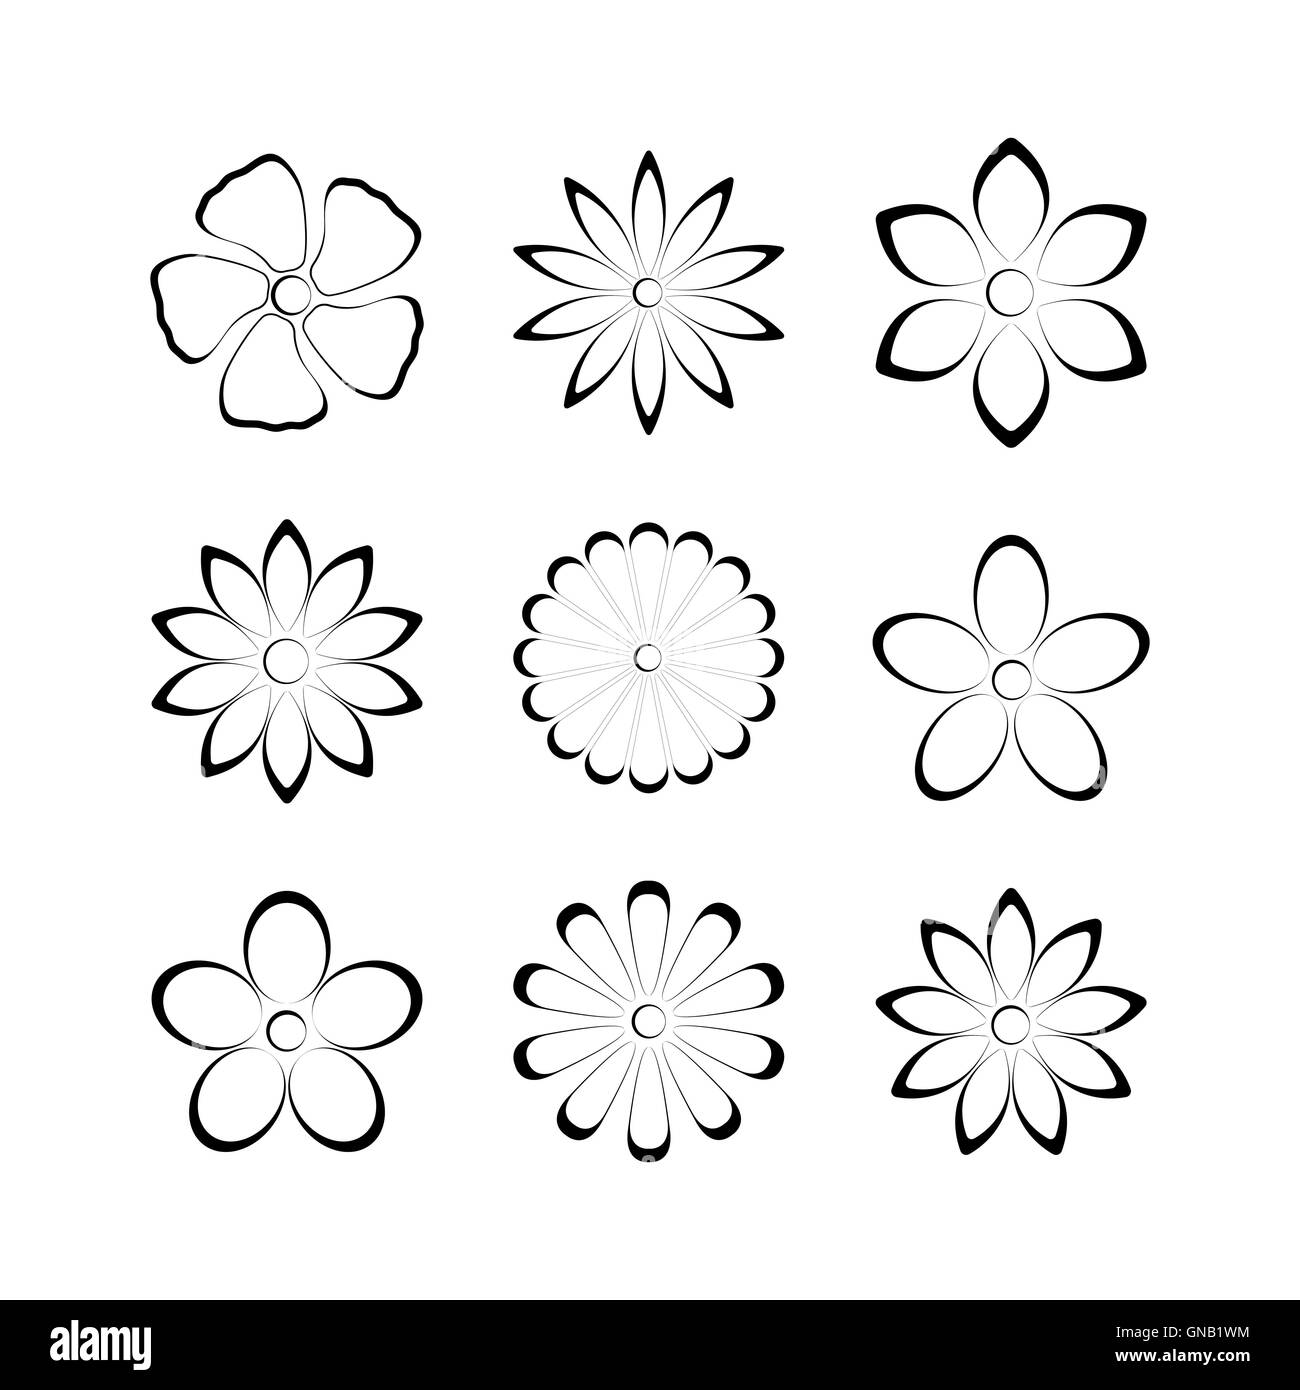 Flower bud set, vector illustration Stock Vector